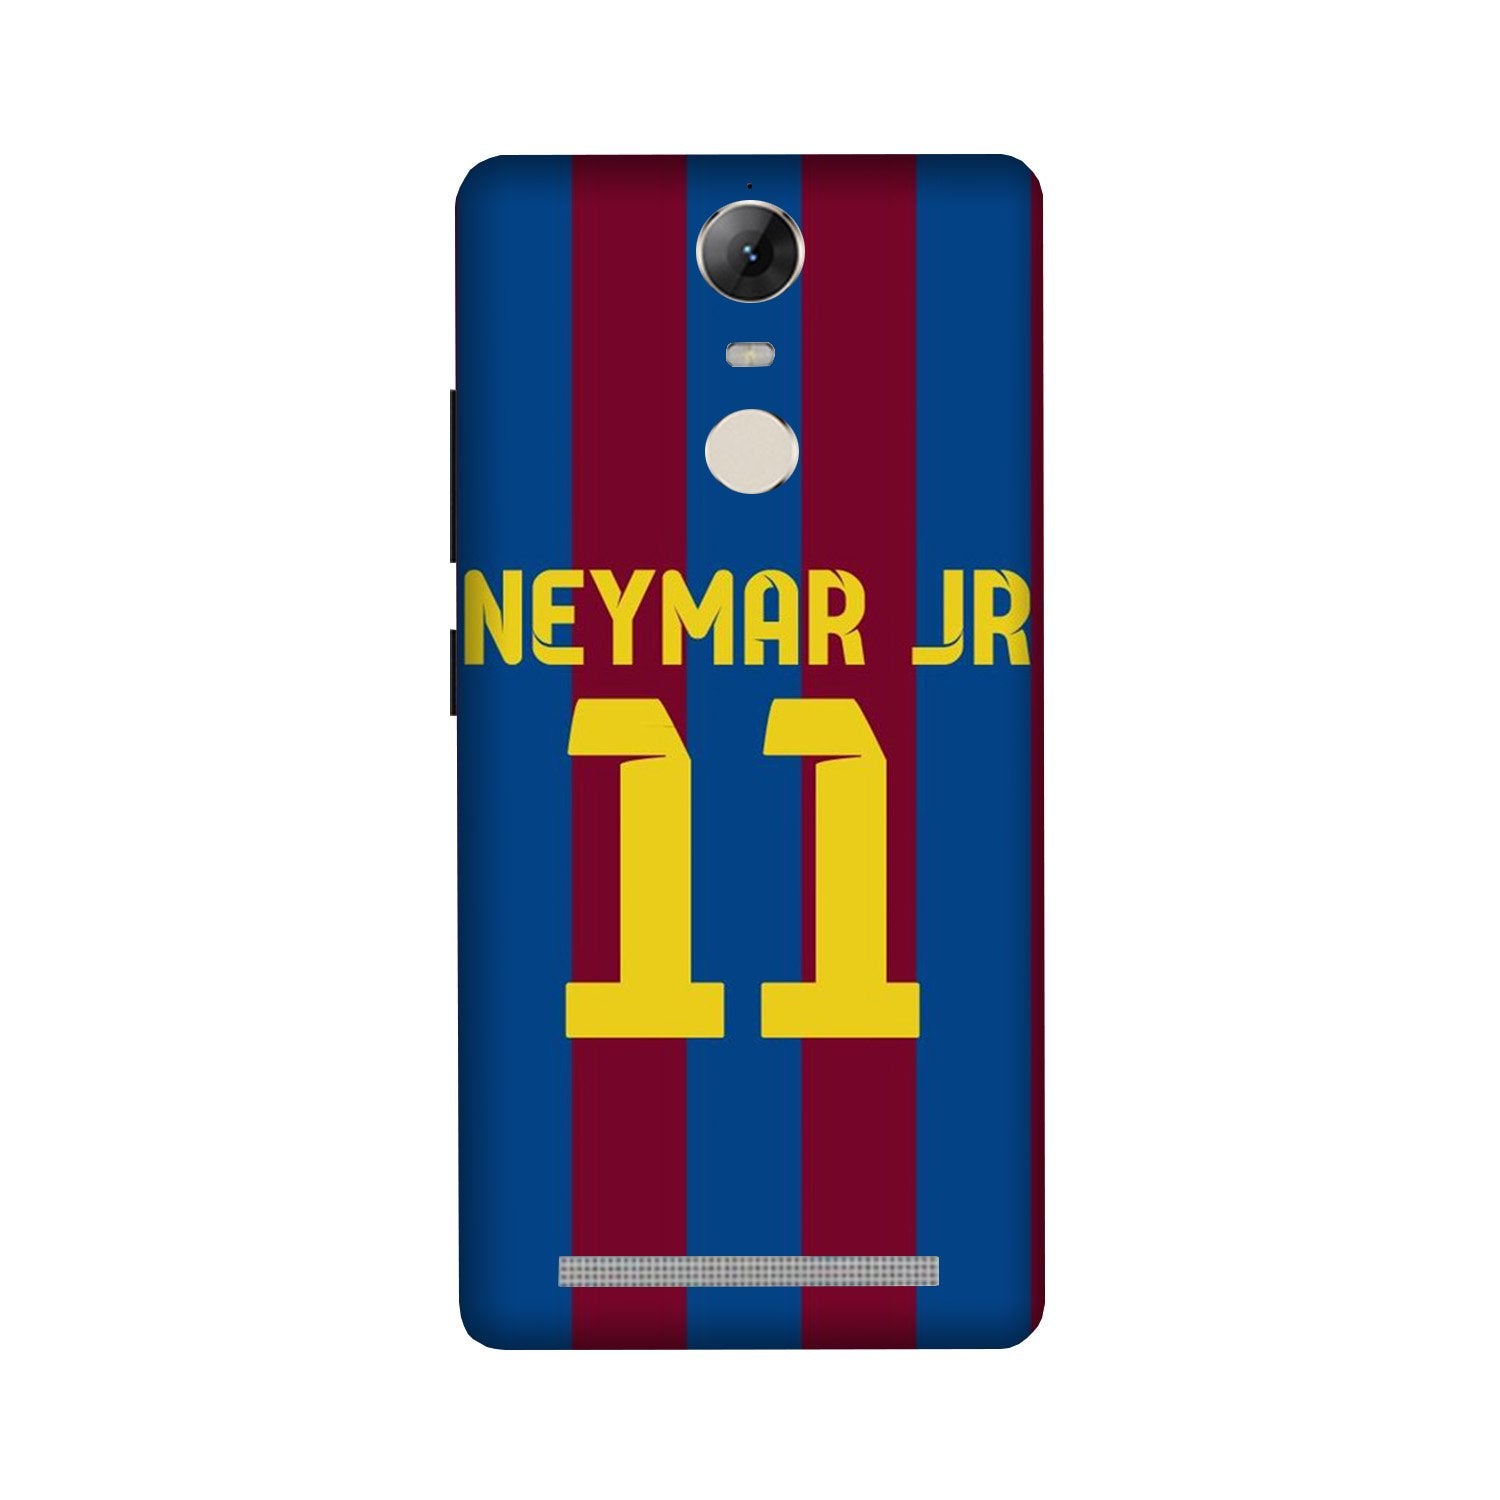 Neymar Jr Case for Lenovo Vibe K5 Note  (Design - 162)